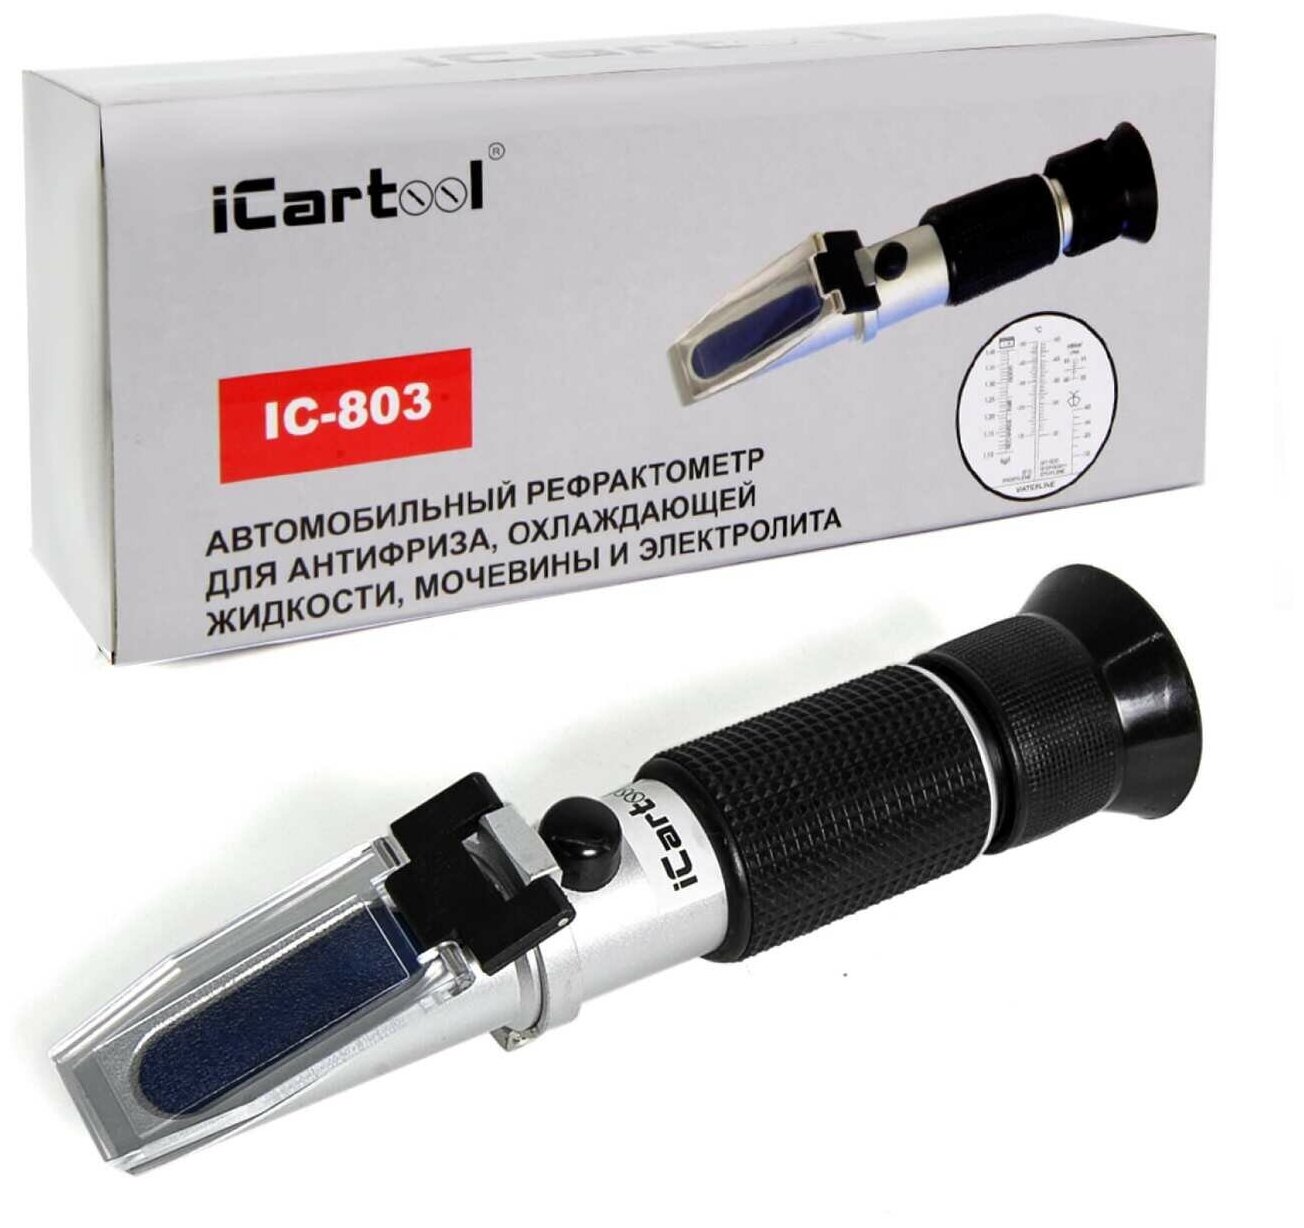 ICarTool Автомобильный рефрактометр iCartool IC-803 для антифриза охлаждающей жидкости G11/G12/G12+/G12++/G13  электролита и мочевины Adblue